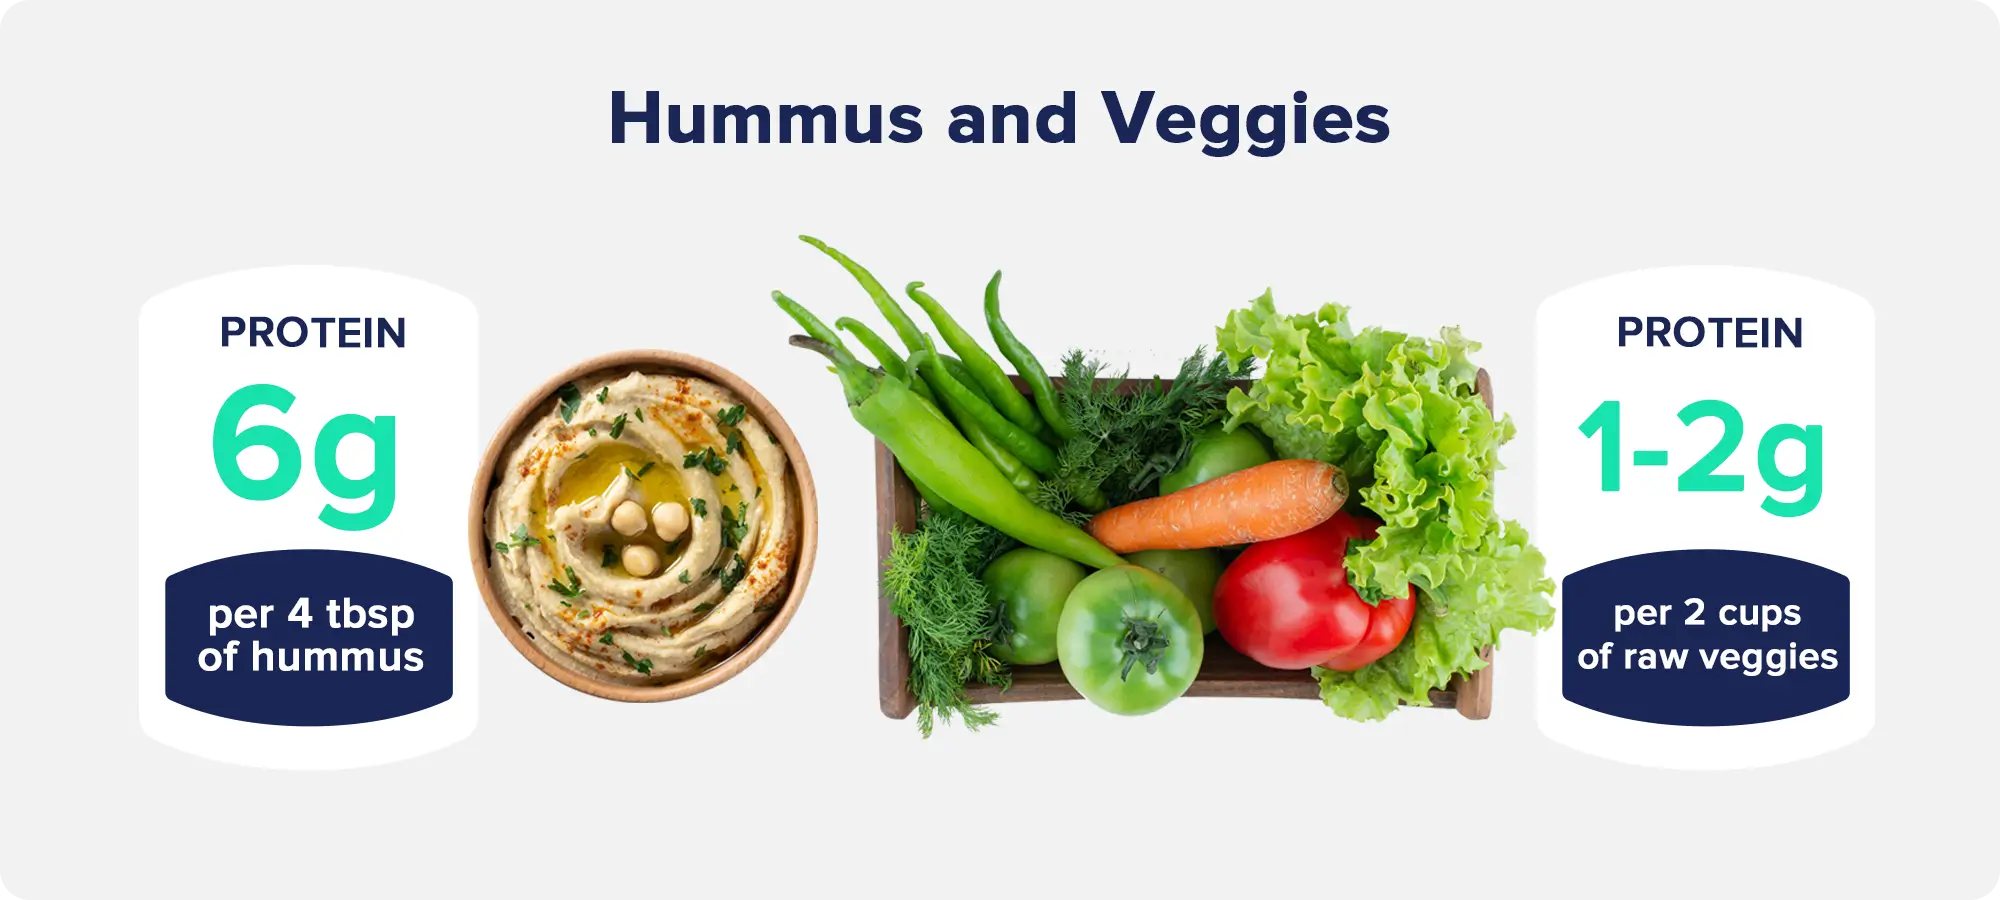 13. Hummus and Veggies